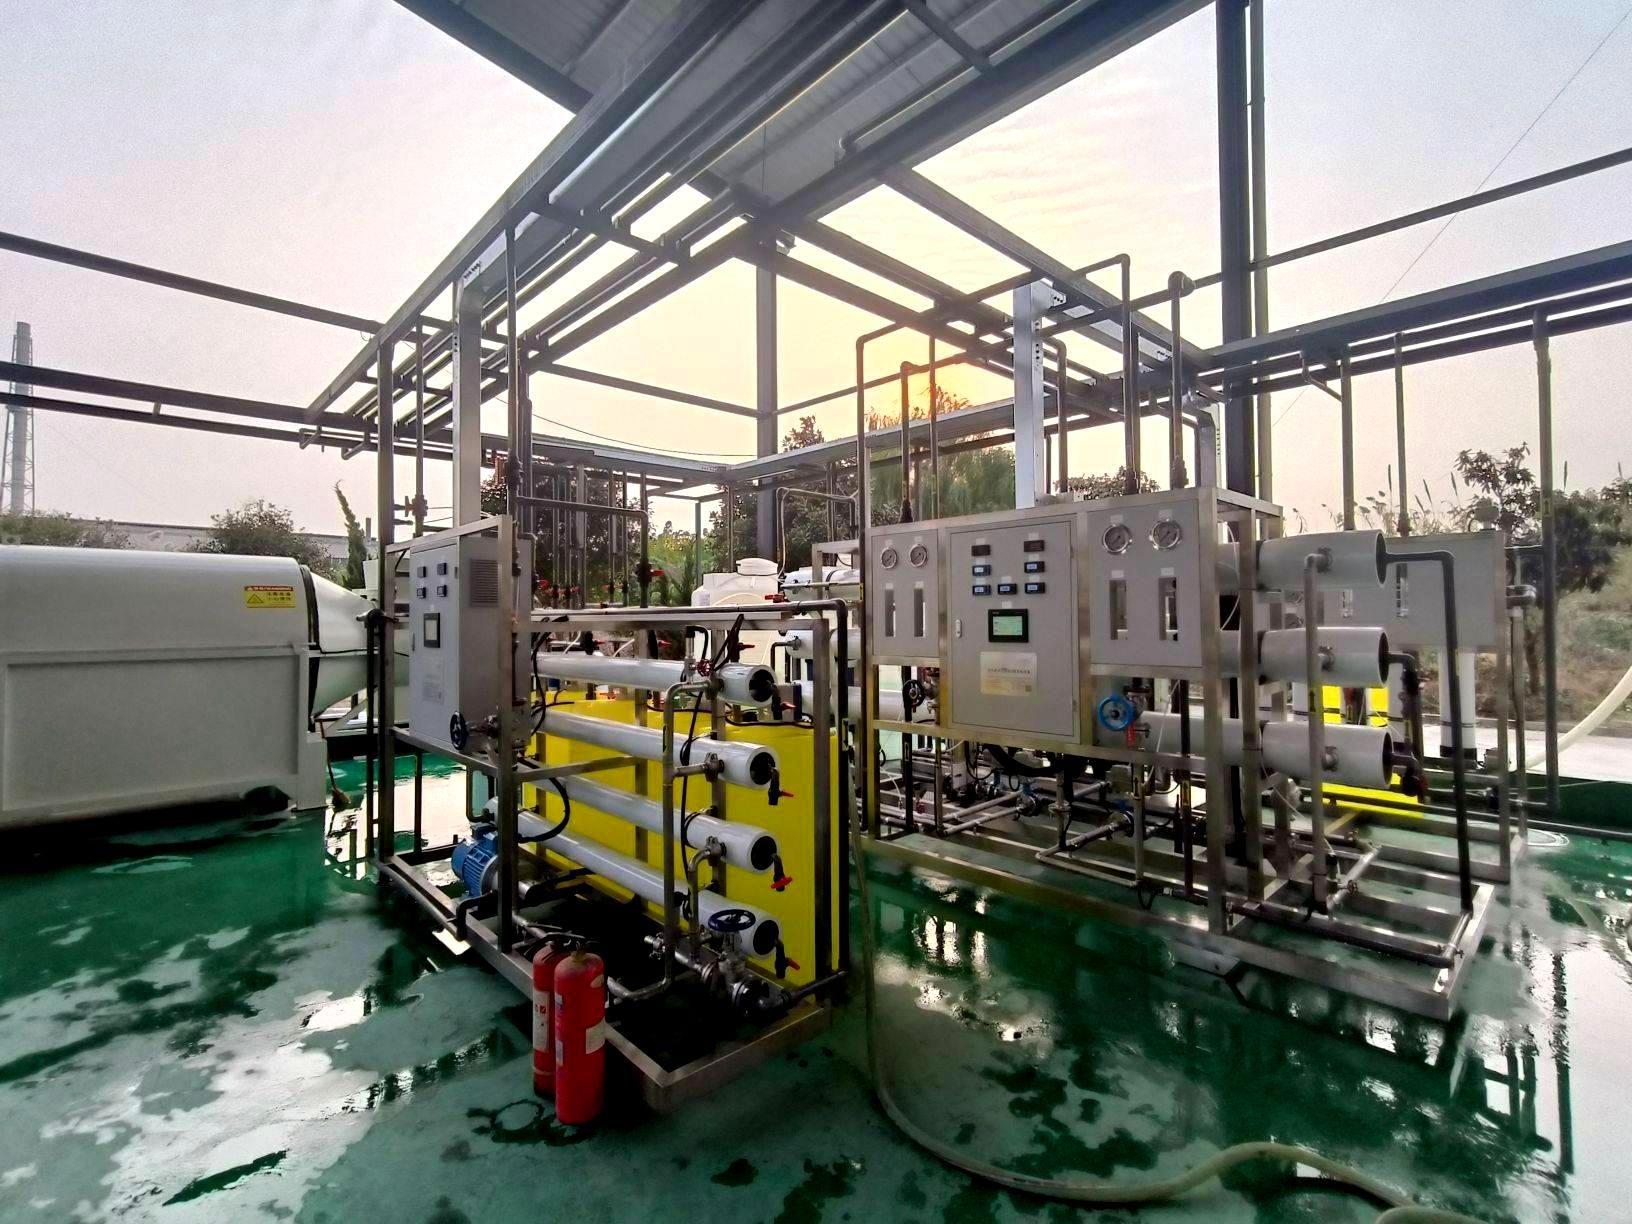 【PG电子公司】上海公司中水回用+废水处理设备安装调试完成